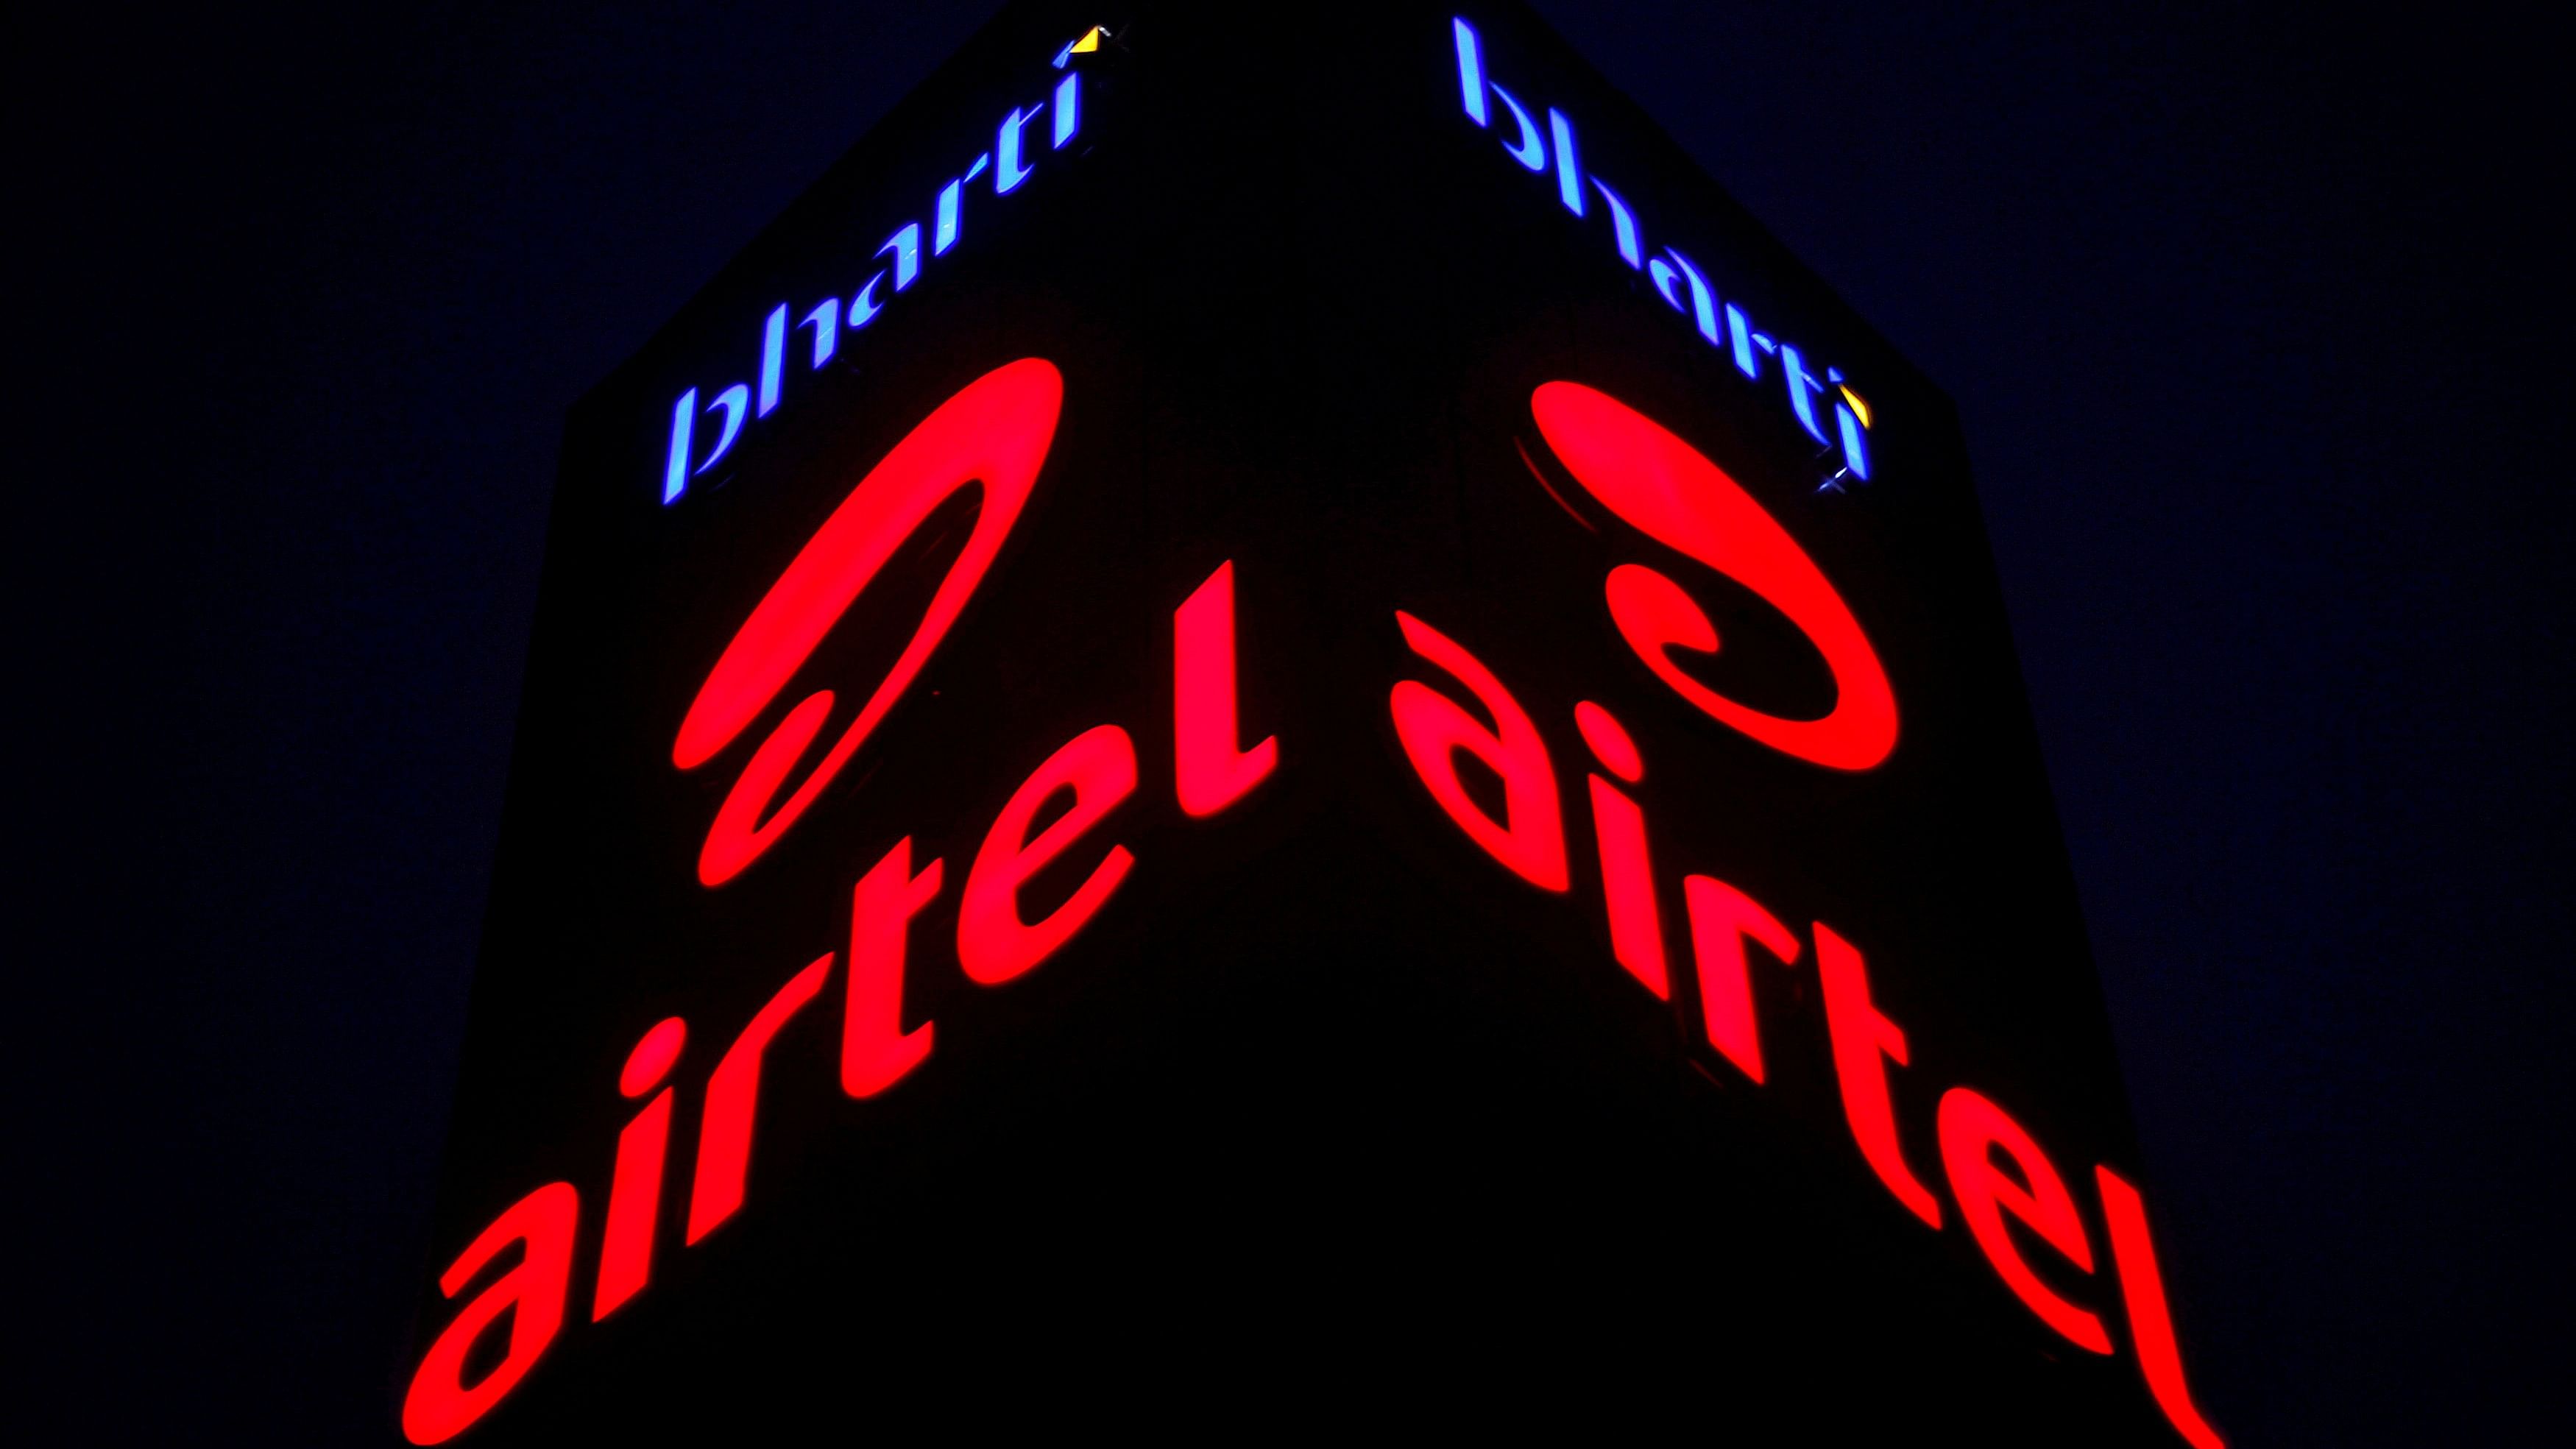 <div class="paragraphs"><p>Representative image showing Bharti Airtel logo.</p></div>